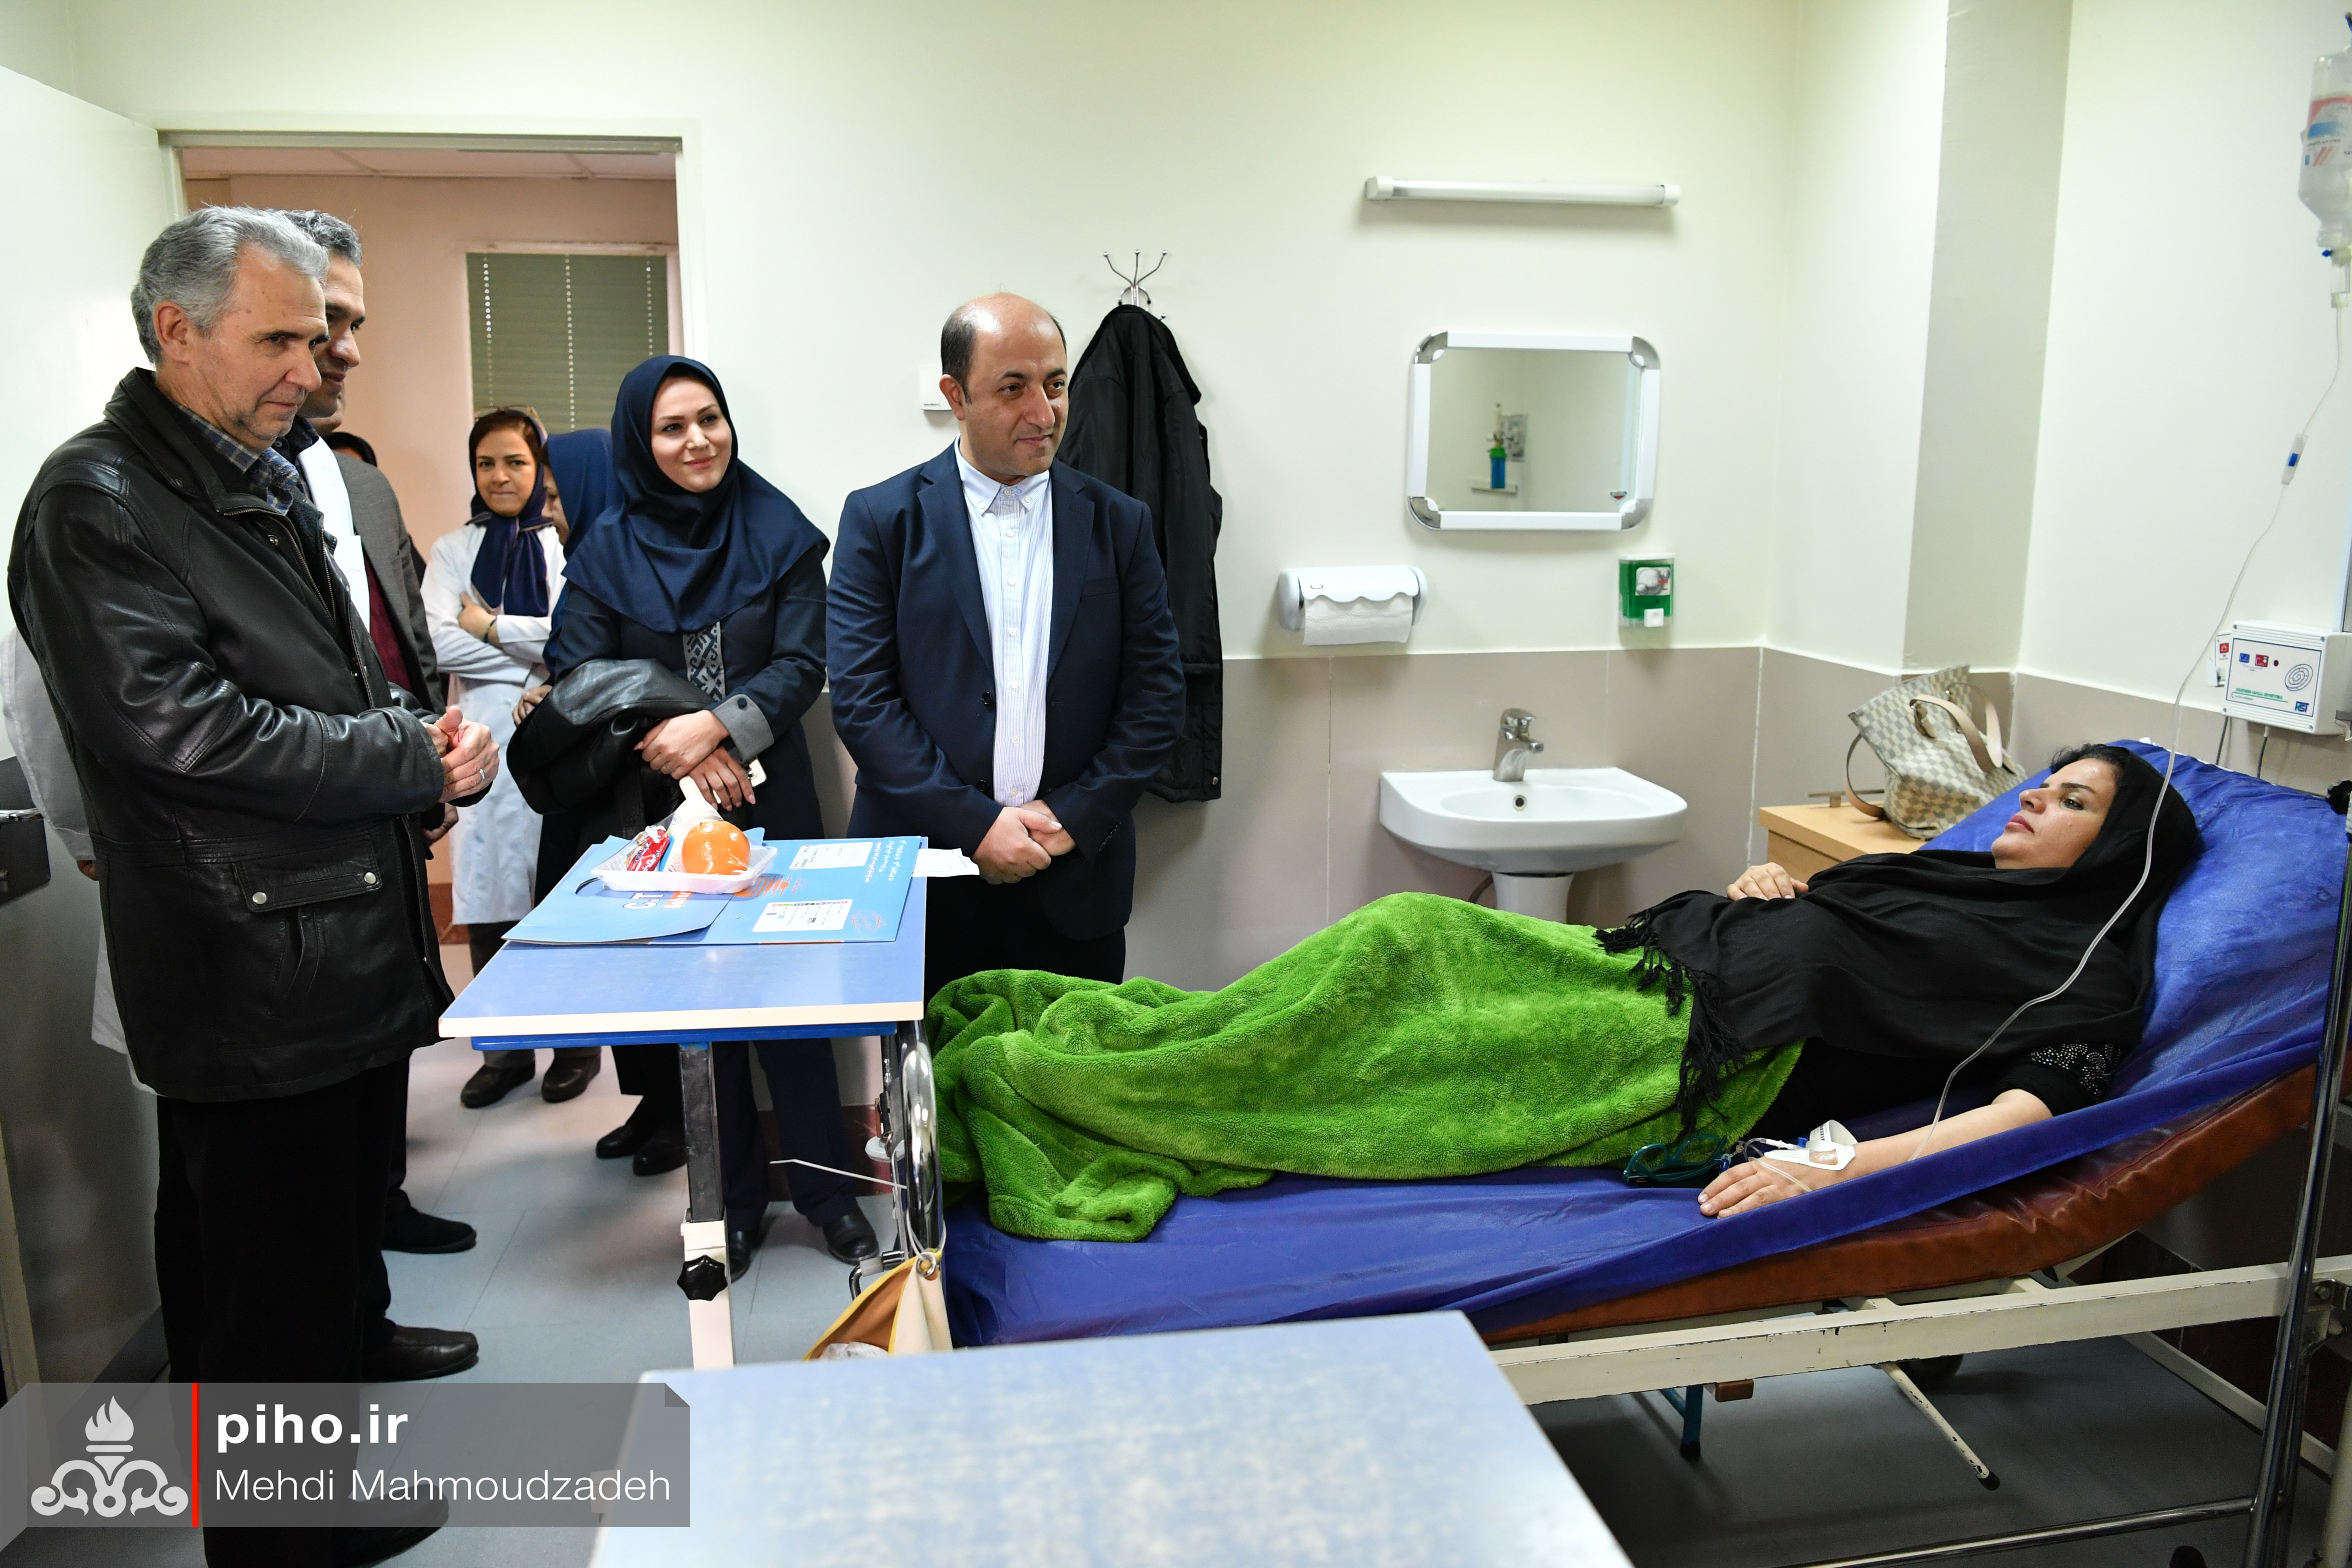 روز جهانی سرطان بیمارستان تهران  3